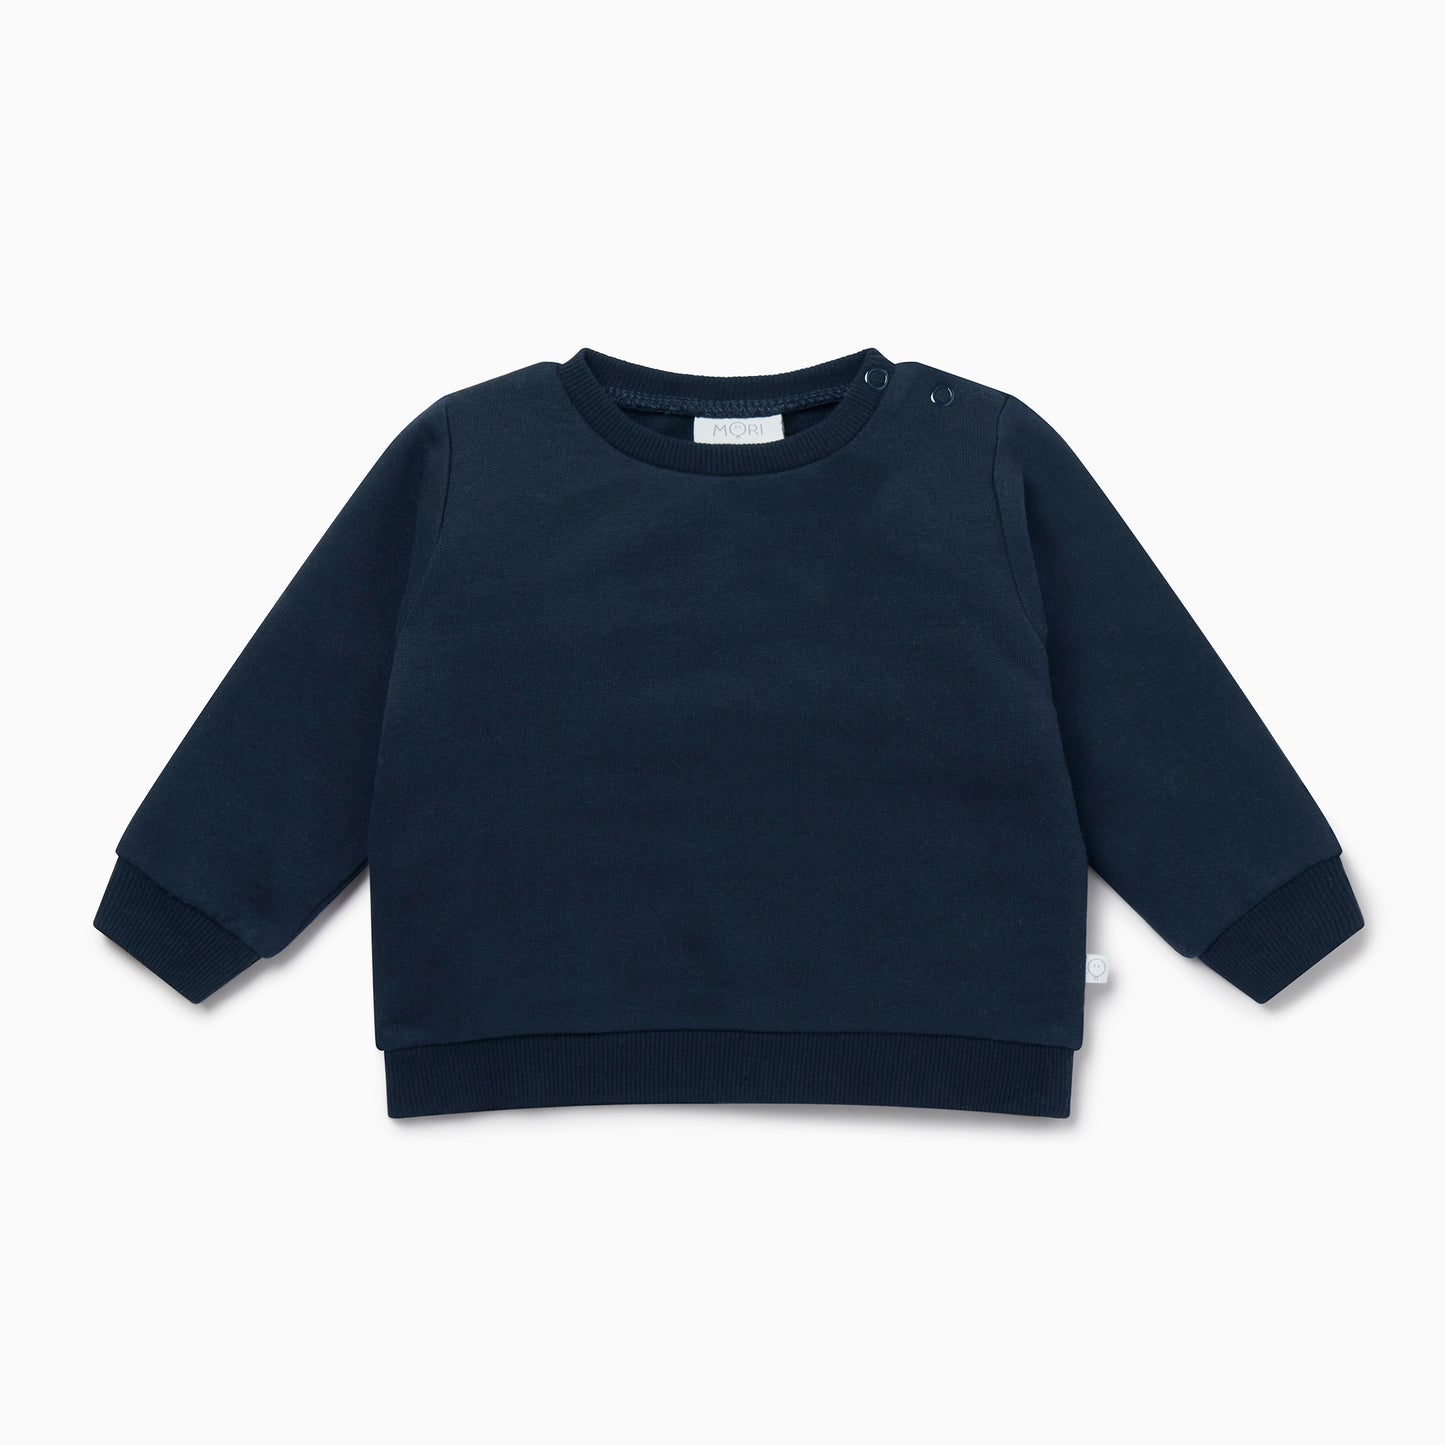 Originals sweatshirt - navy